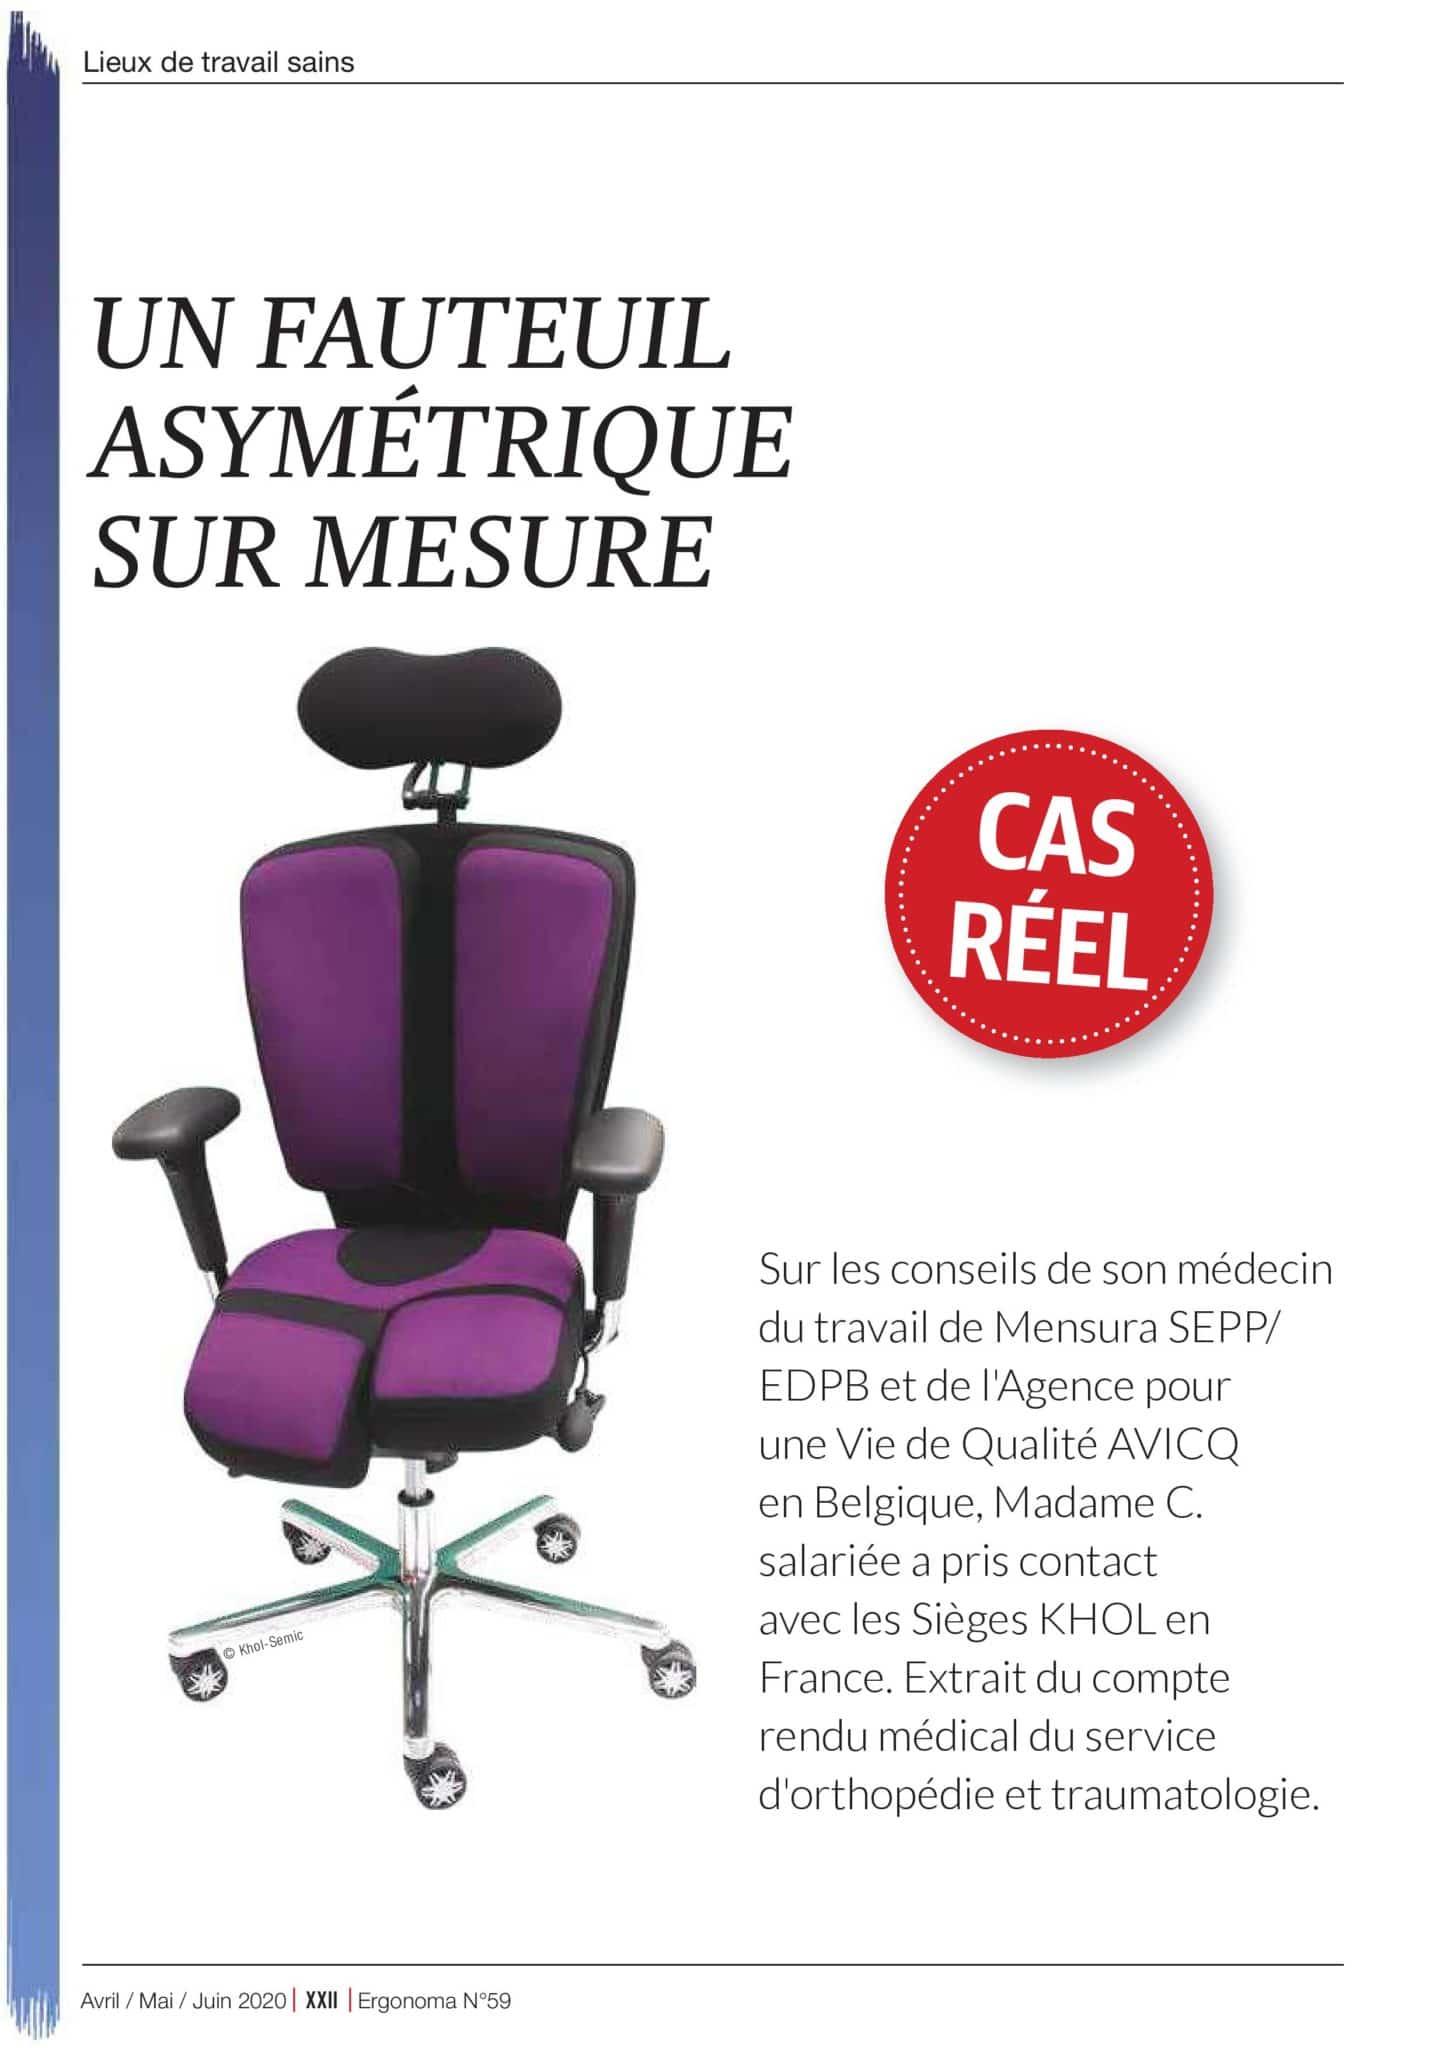 Ergonoma-journal-étude-de-cas-réeel-SIEGES-KHOL-n°59-avril-juin-2020-page-001-scaled Etude d'un cas pratique à partir d'un fauteuil PERINEOS 7 adapté, asymétrique, réalisé sur mesure